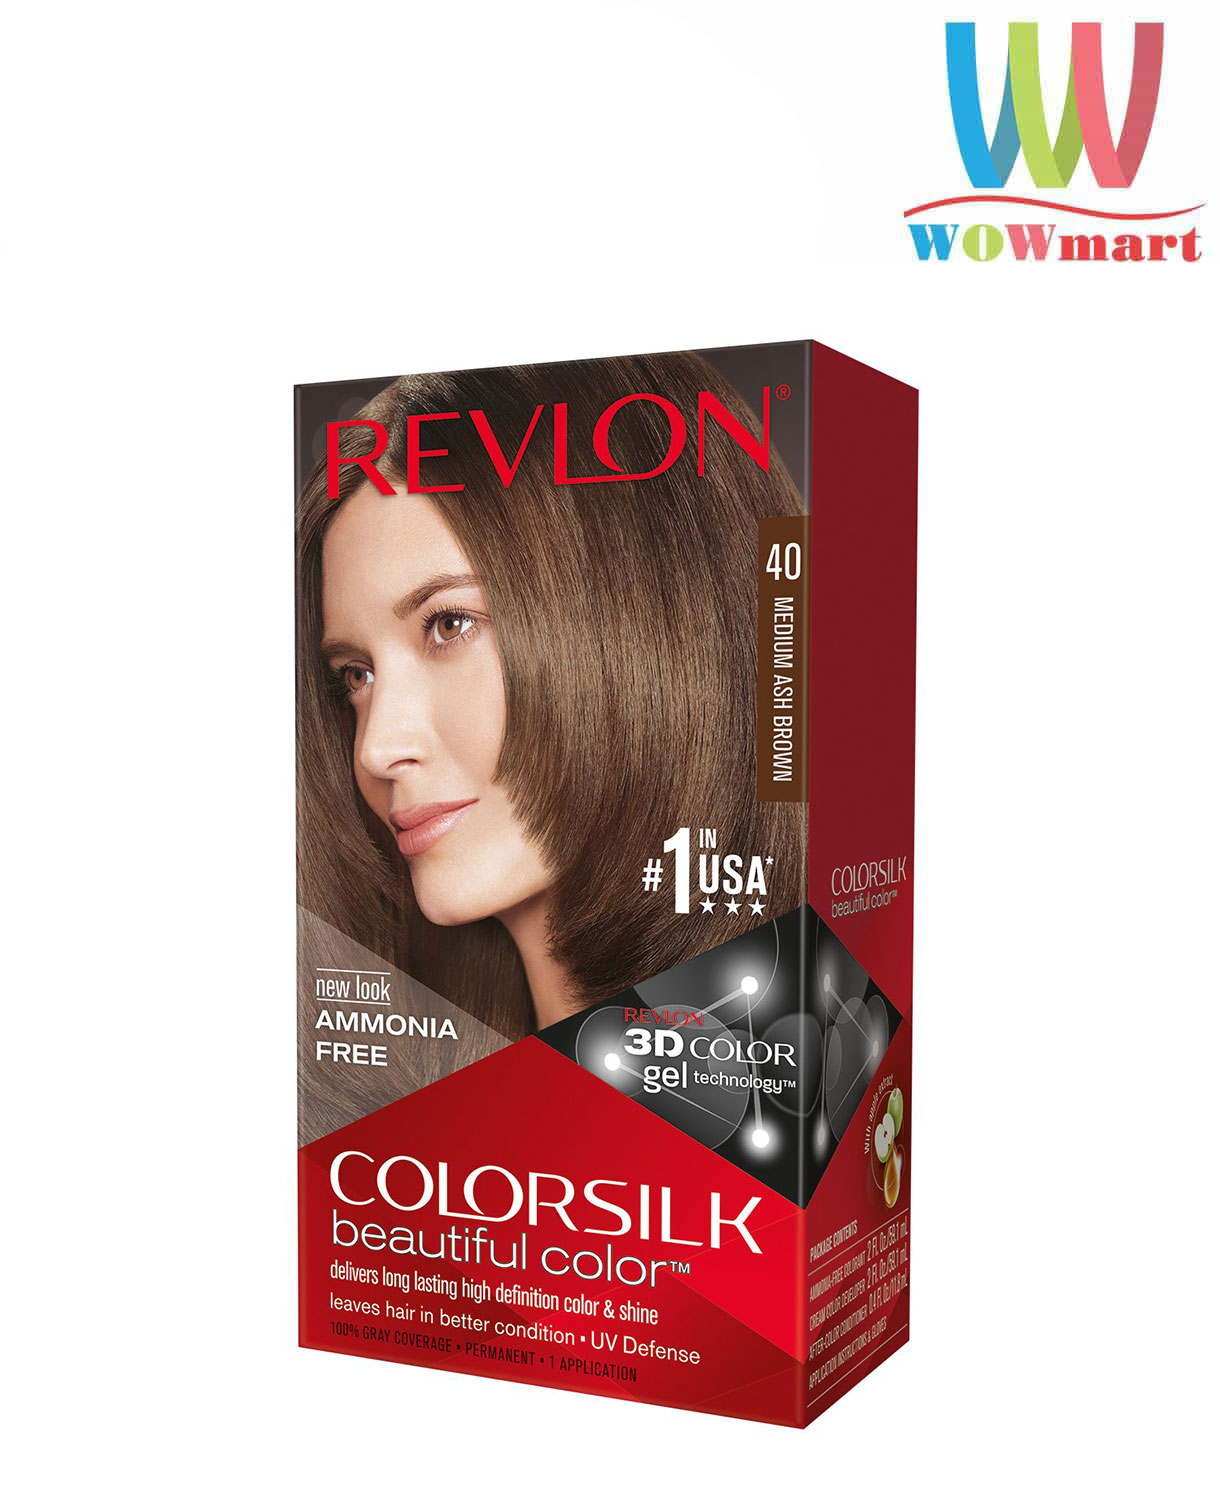 Nhuộm tóc Revlon Colorsilk Medium Ash Brown số 40 – Wowmart VN | 100% hàng  ngoại nhập